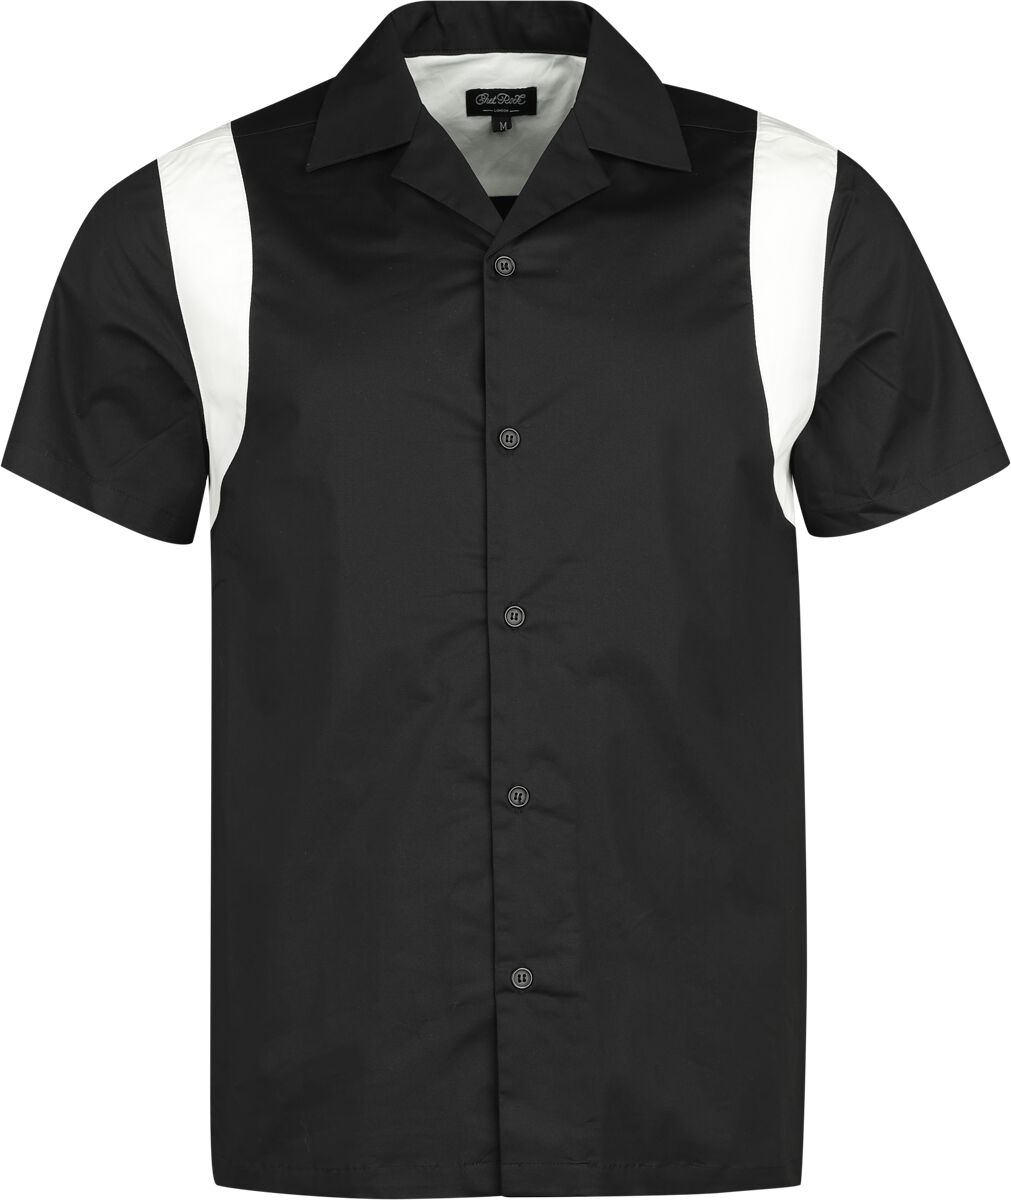 Chet Rock - Rockabilly Kurzarmhemd - Marty Bowling Shirt - S bis XL - für Männer - Größe L - schwarz/weiß von Chet Rock